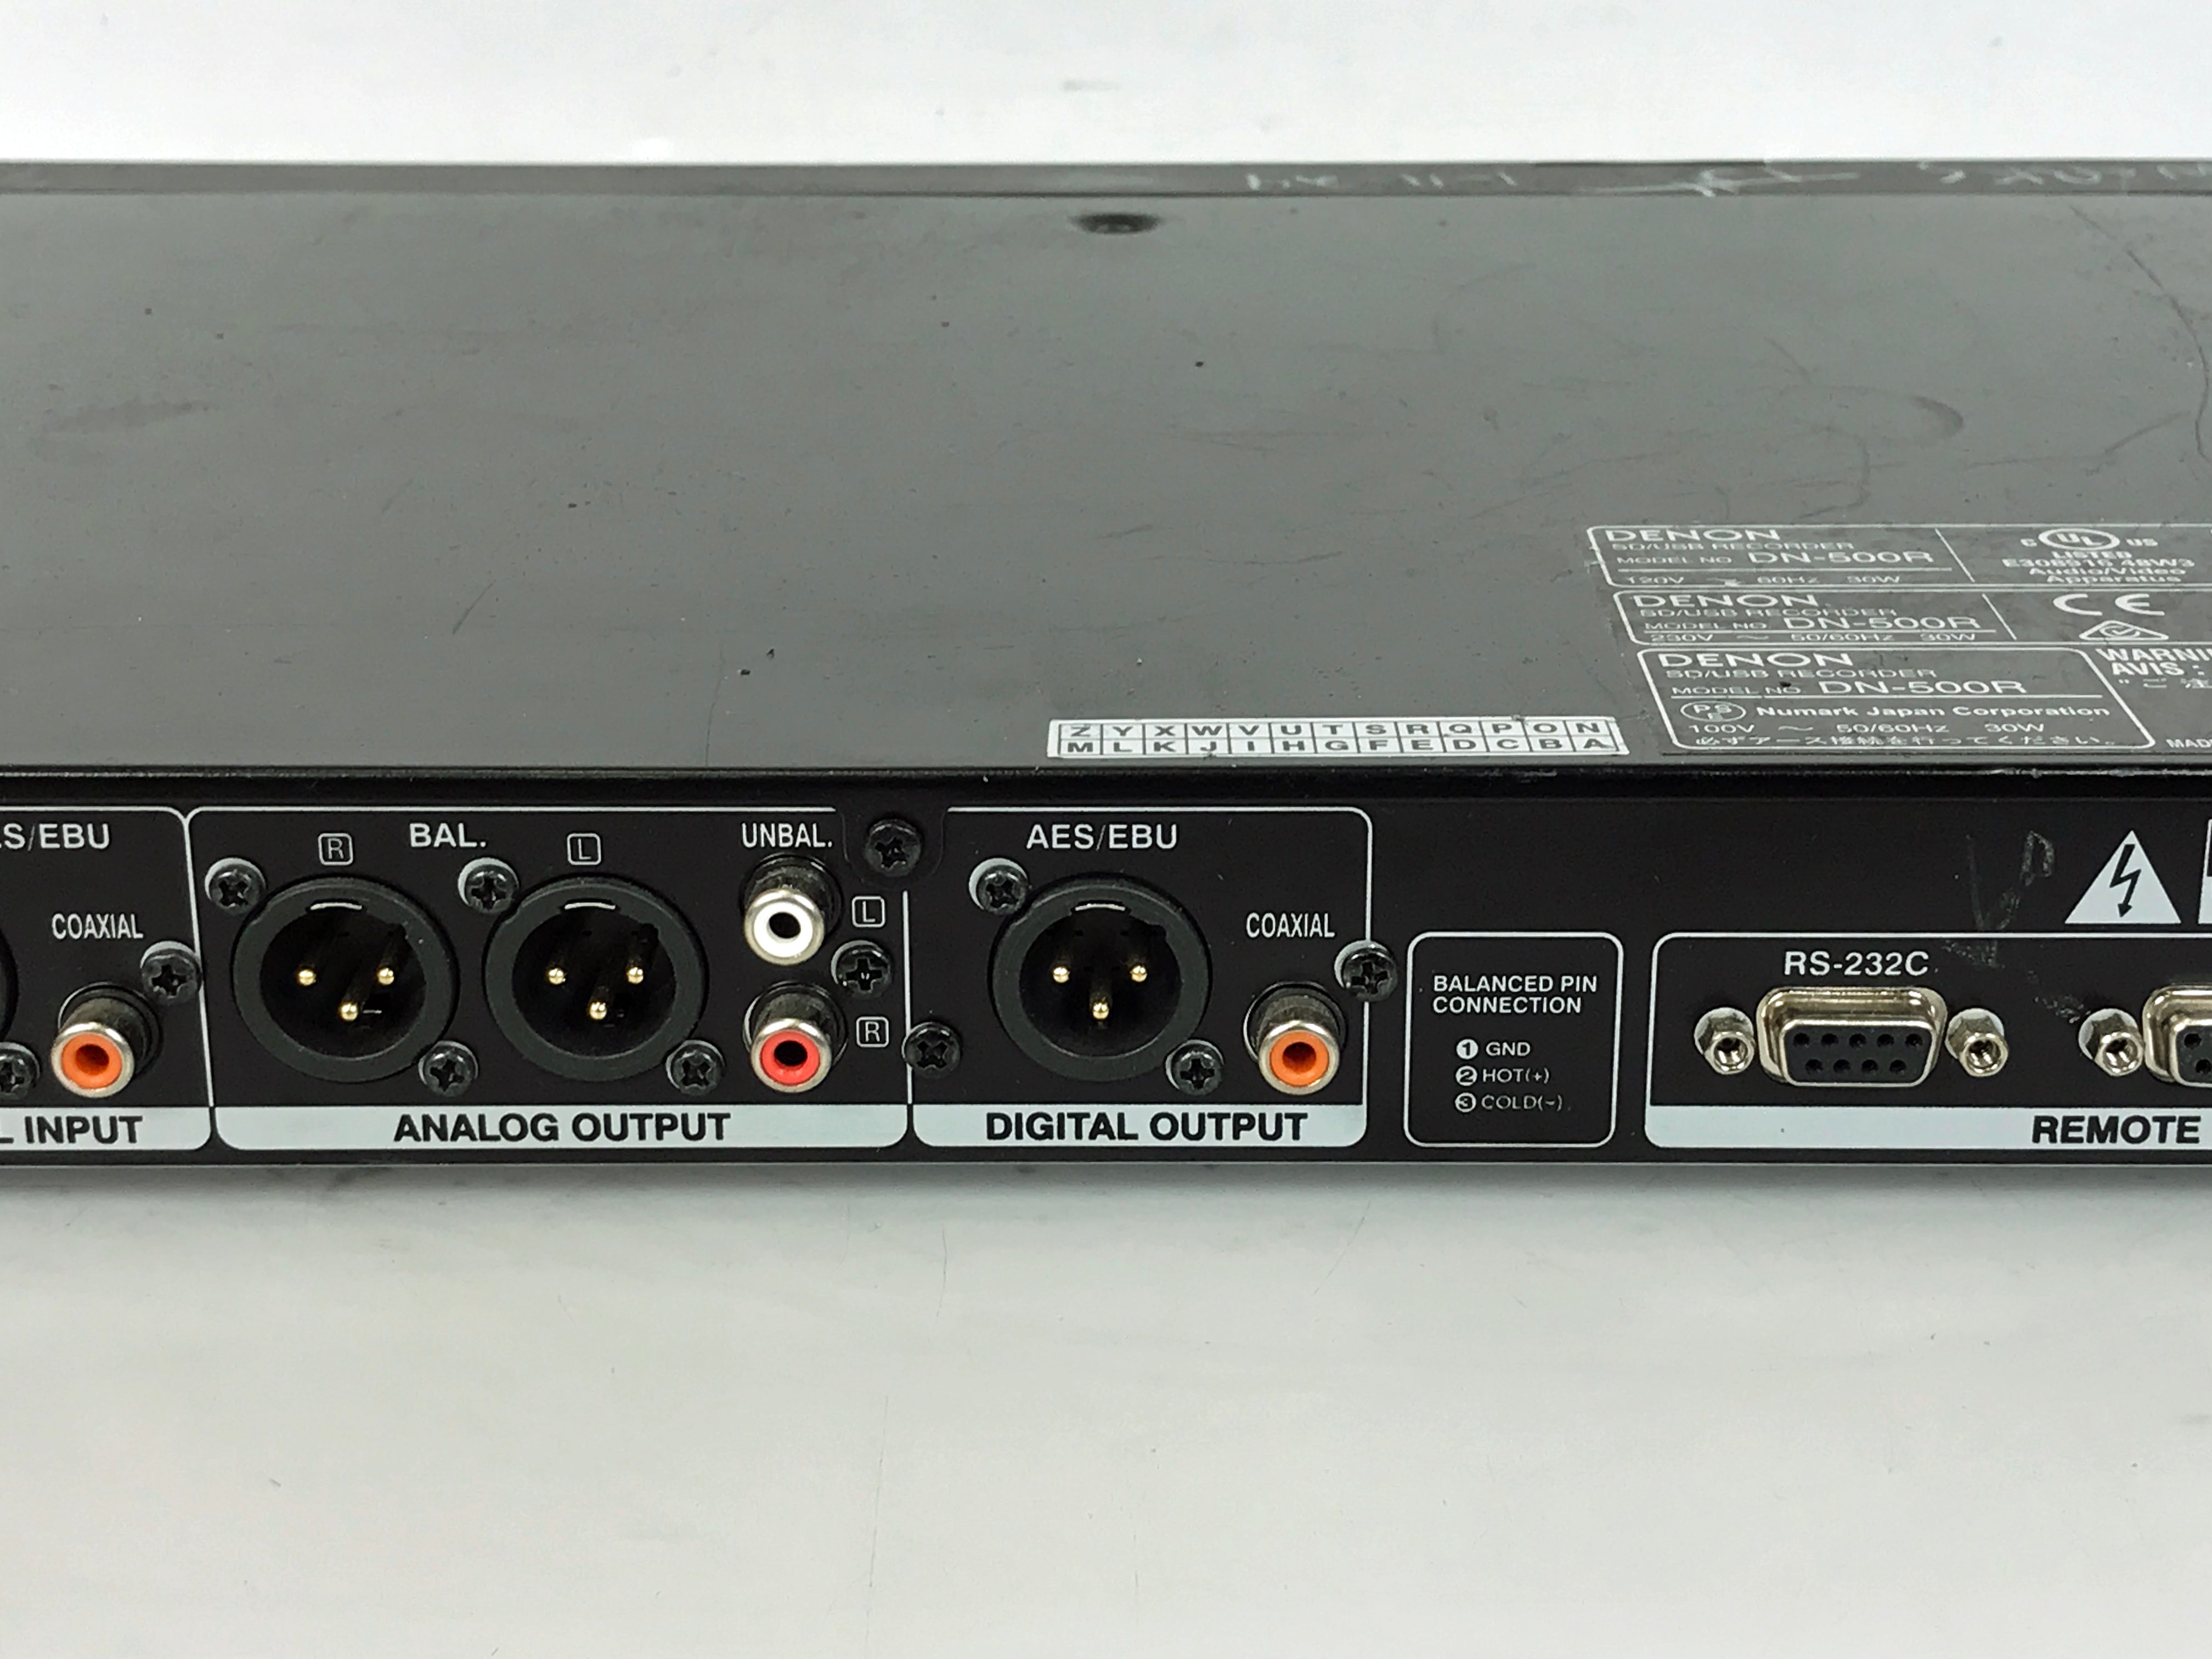 Denon DN-500R SD/USB 1U Audio Recorder